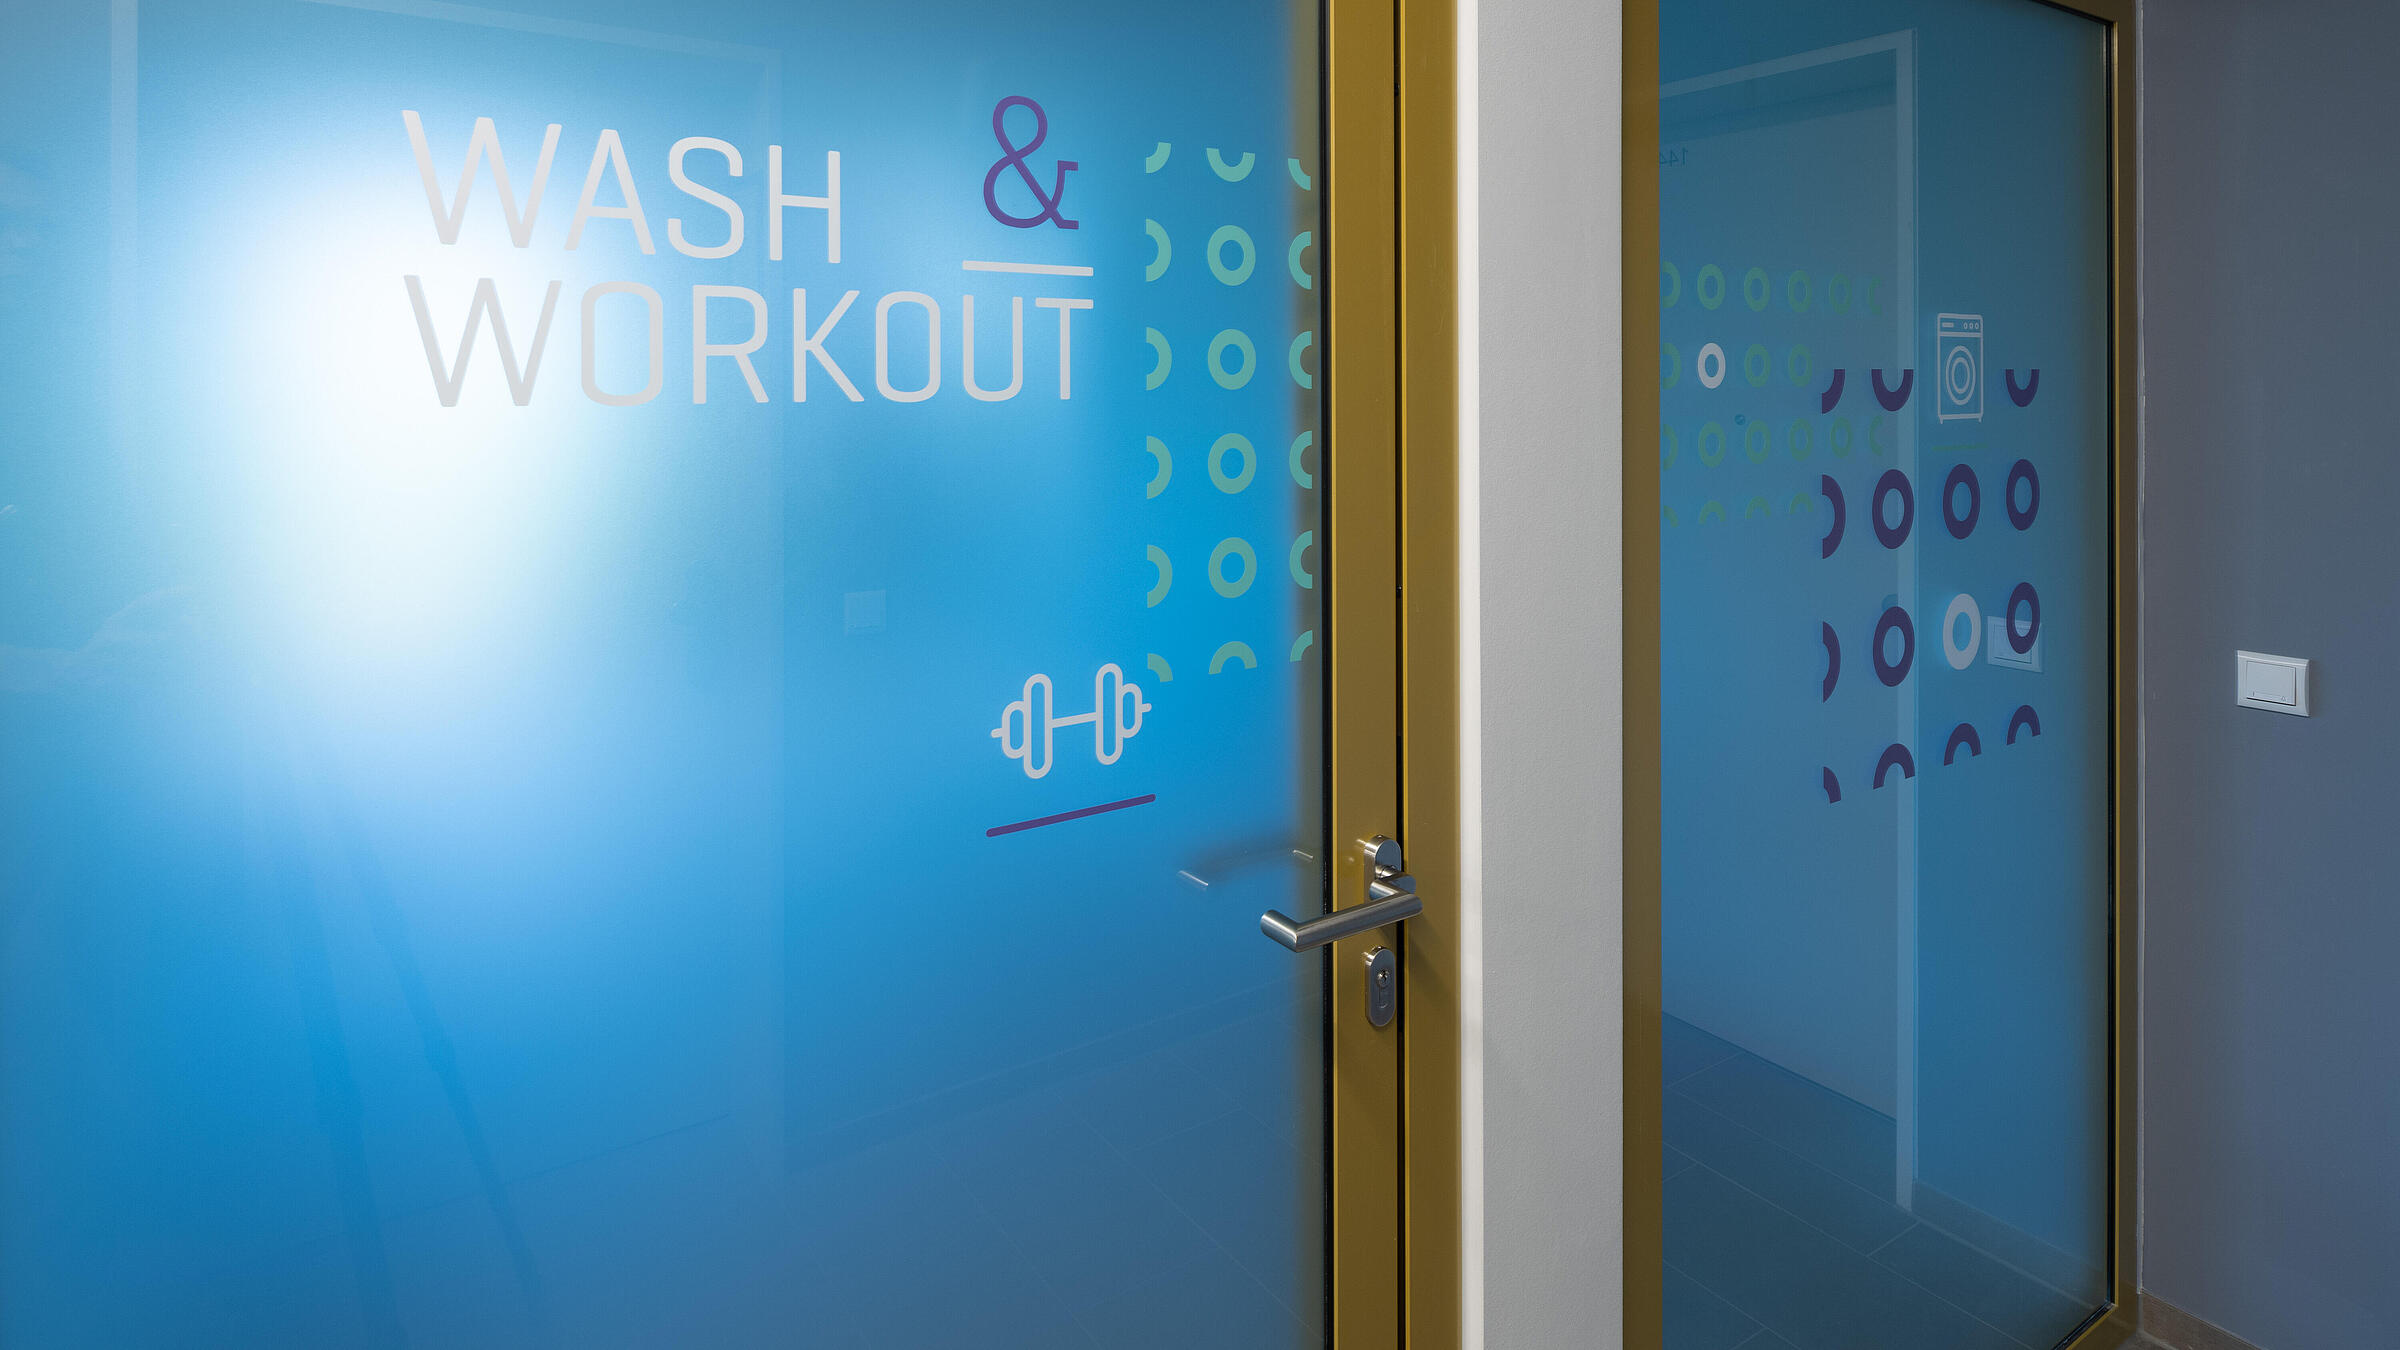 Innenaufnahme zeigt die Tür zur Gemeinschaftsfläche "Wash & Workout".